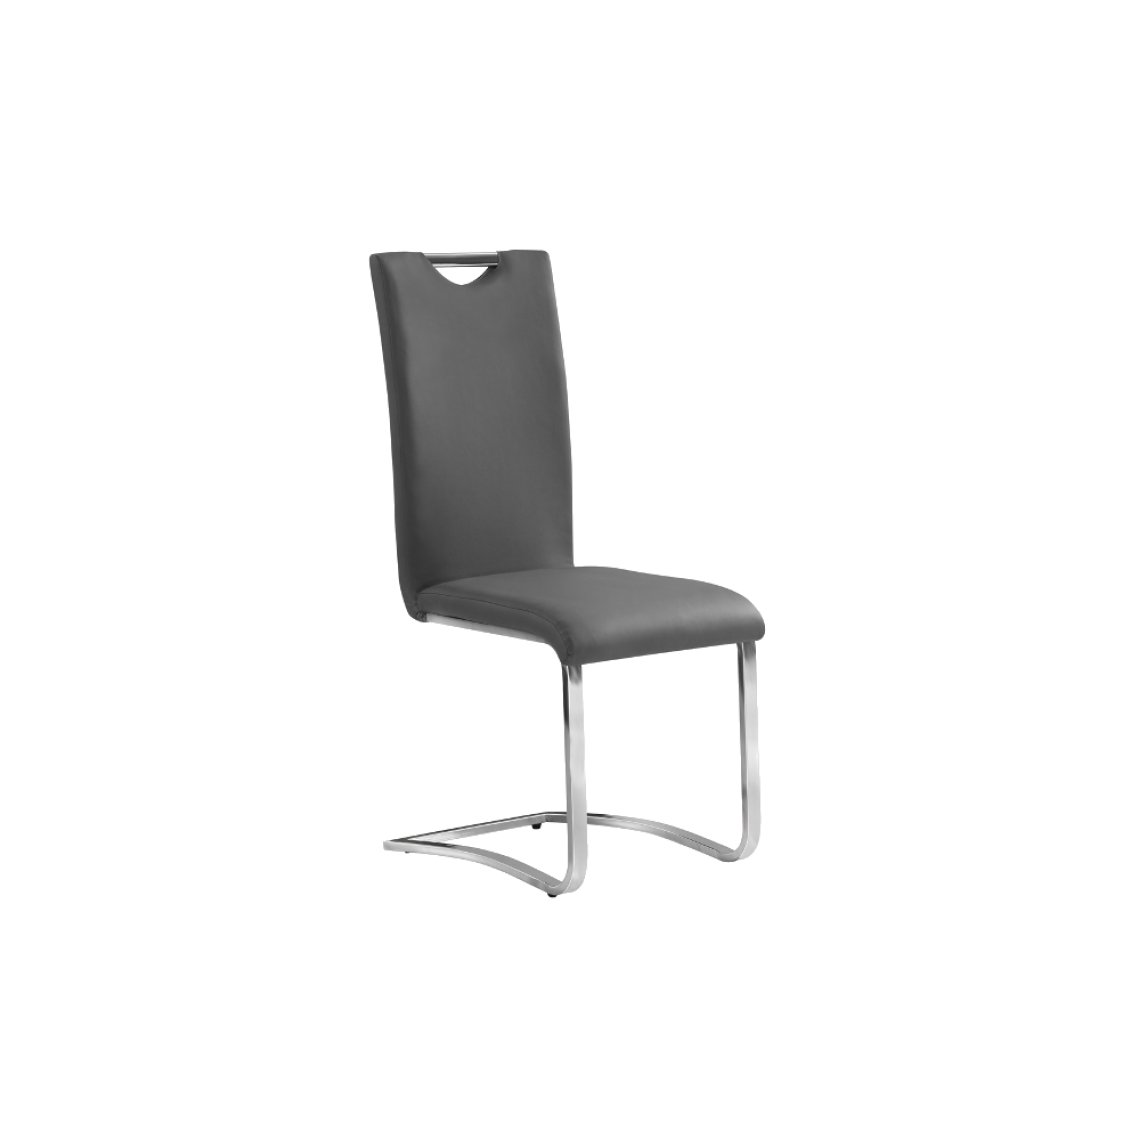 Ac-Deco - Chaise design - H790 - 43 x 42 x 101 cm - Gris - Chaises